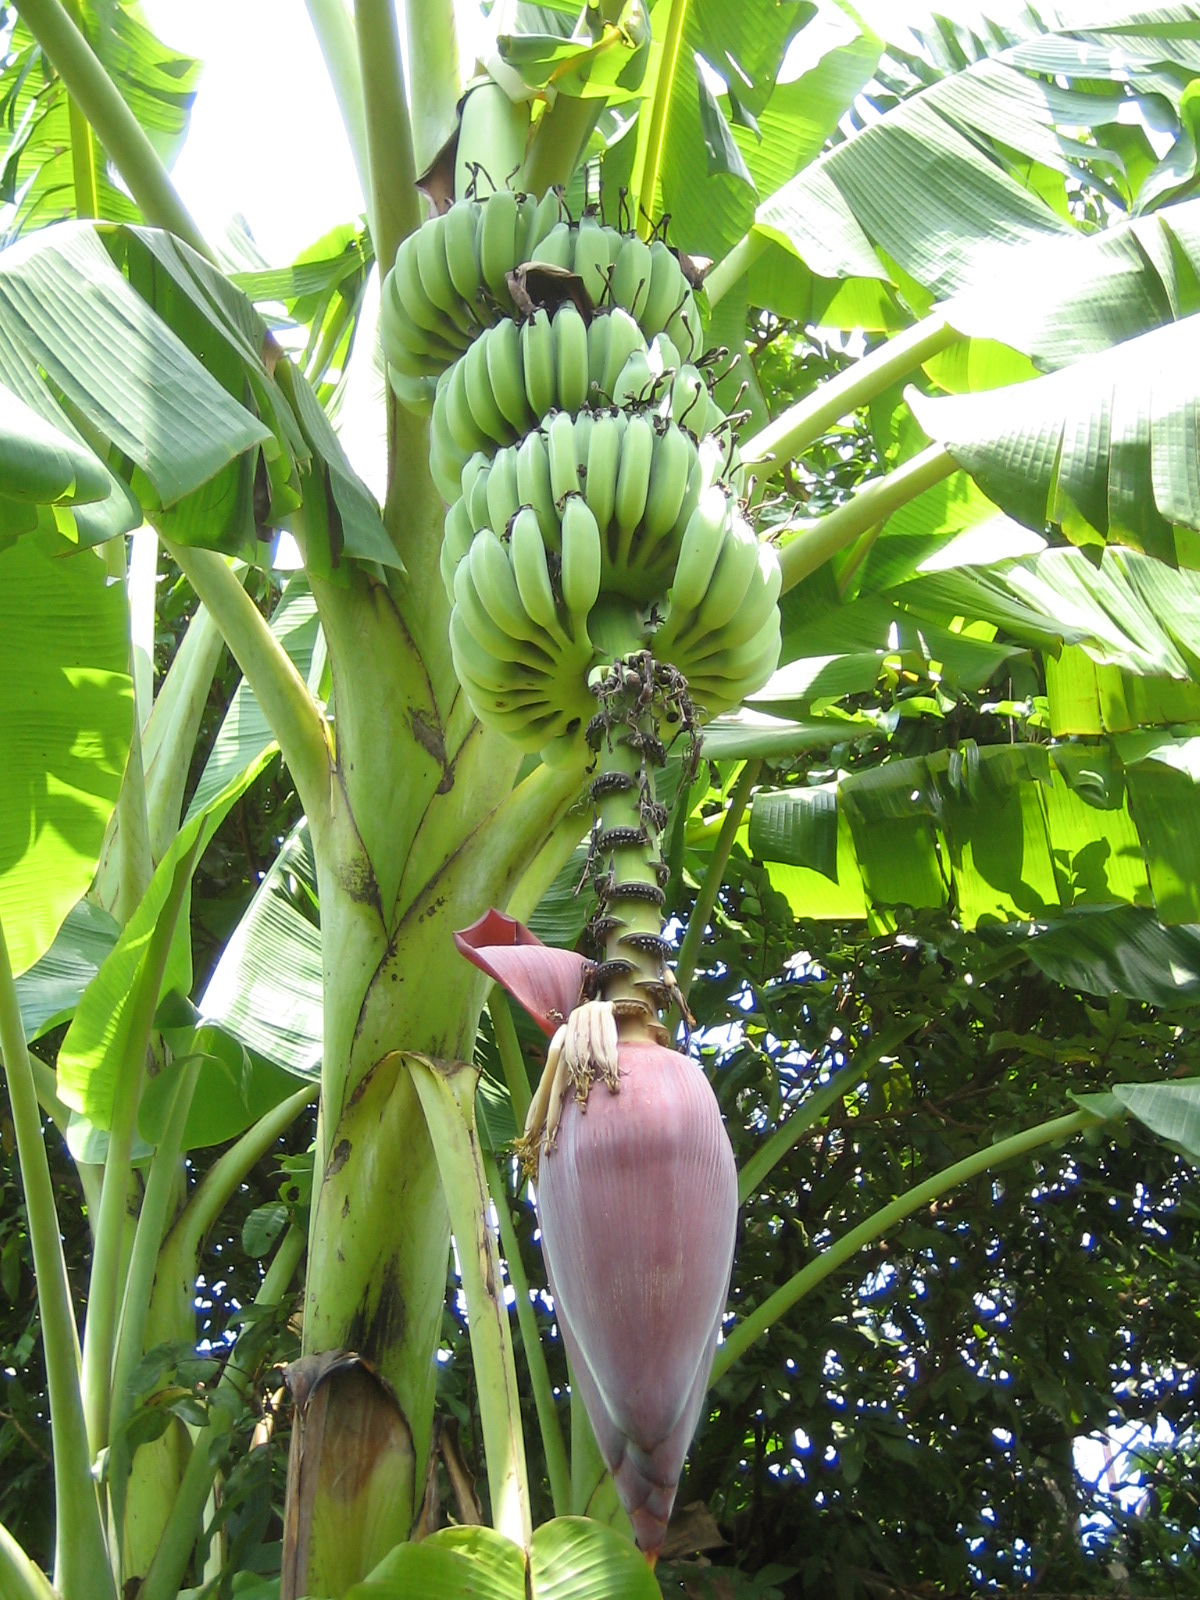 台青蕉 Youthbanana 香蕉每個部分都有用 香蕉花